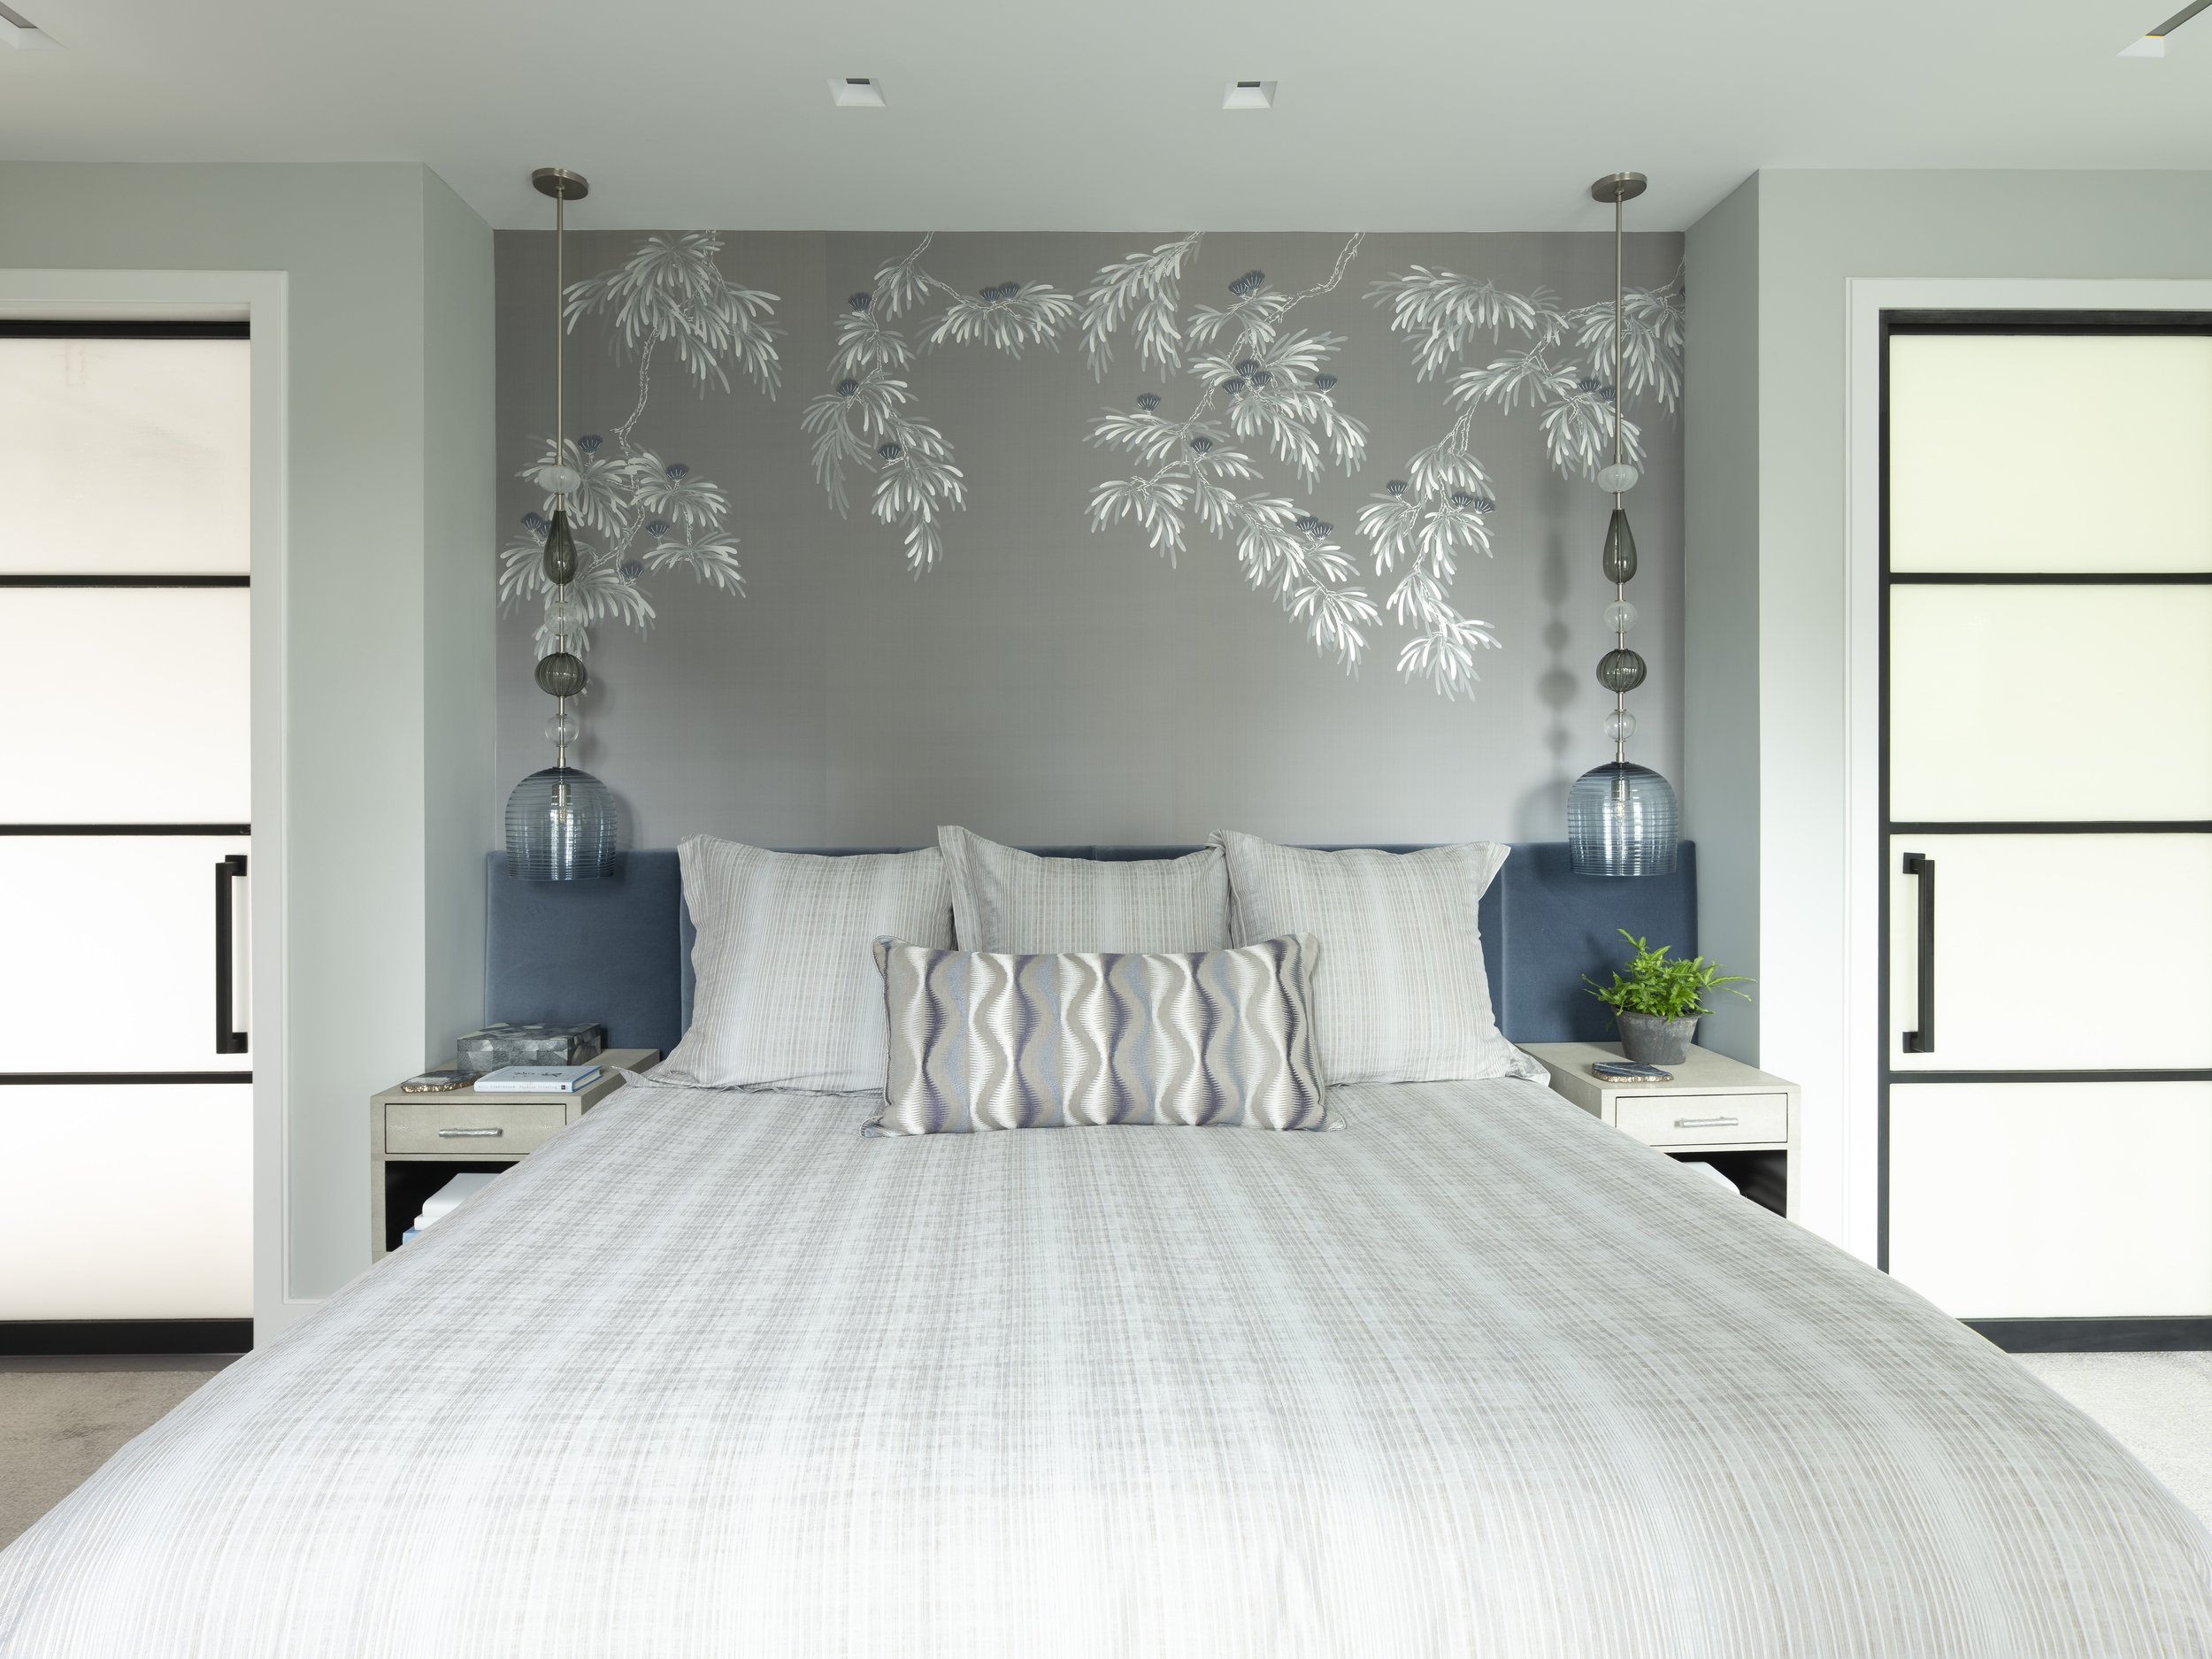 13-unique-wallpaper-bedroom-details-blue-silver-white-gray-color-palette-simplisitc-manhattan-penthouse-rinfret-interior-designs..jpg